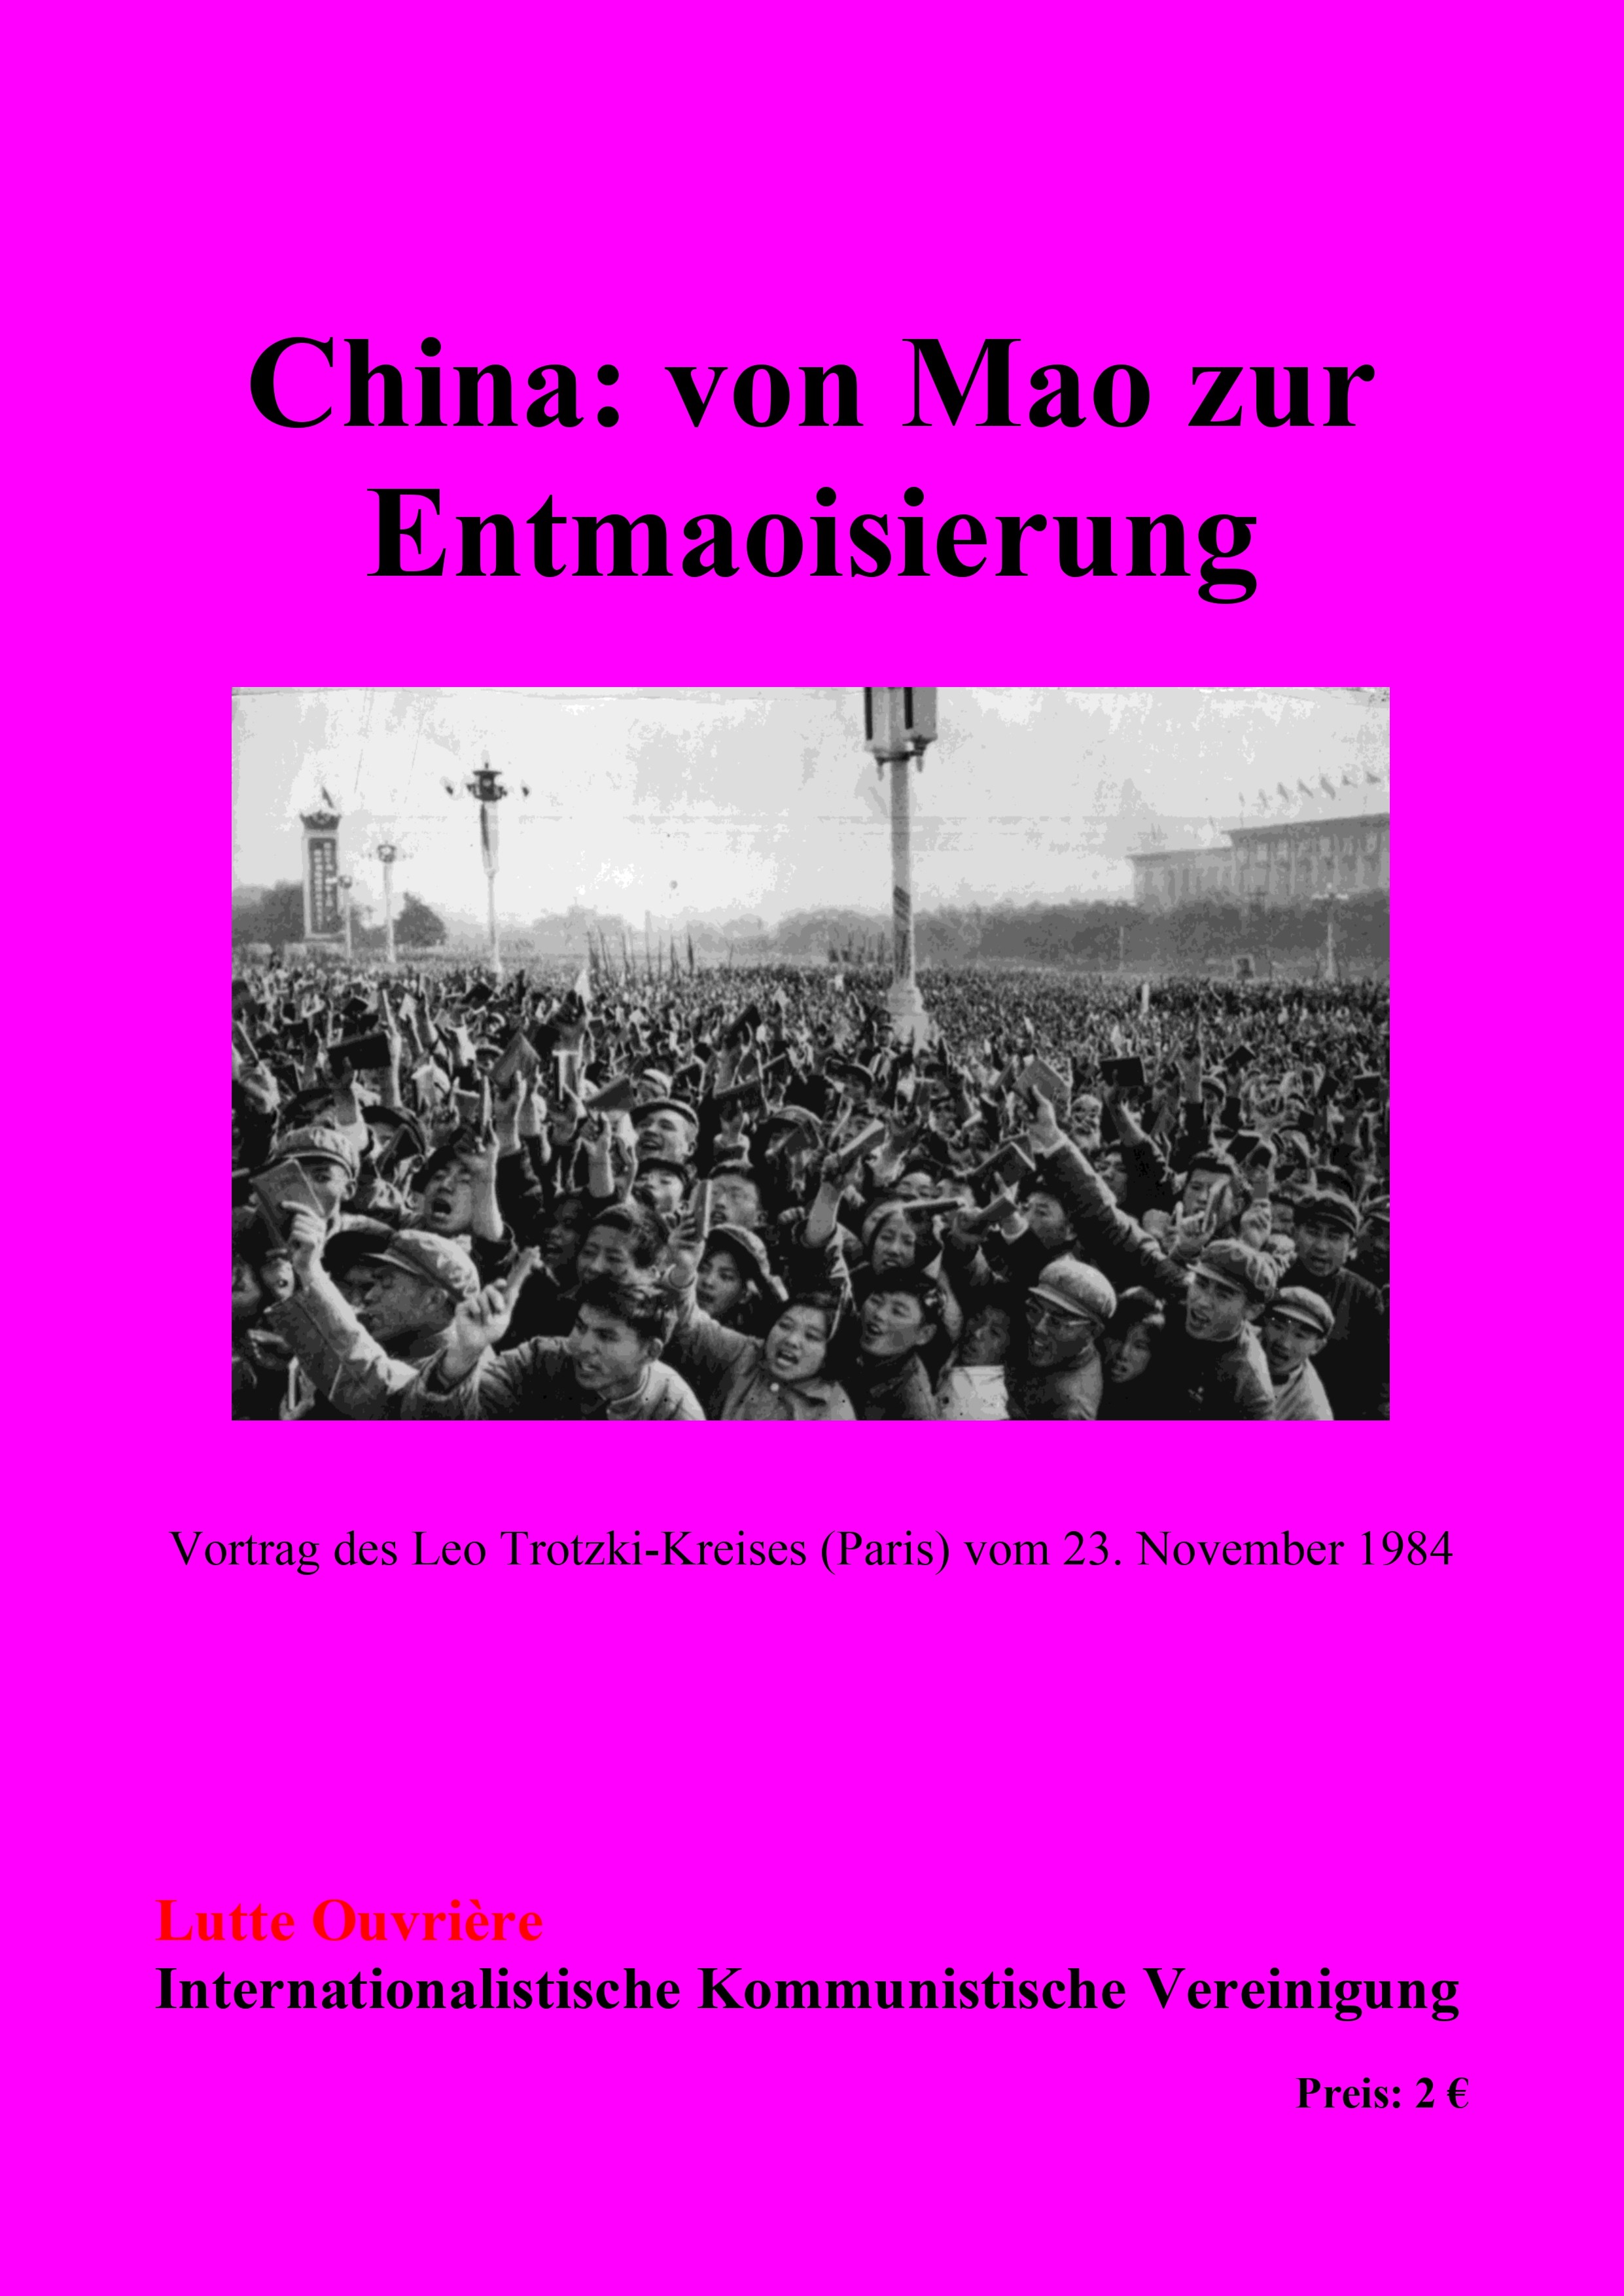 China: von Mao zur Entmaoisierung